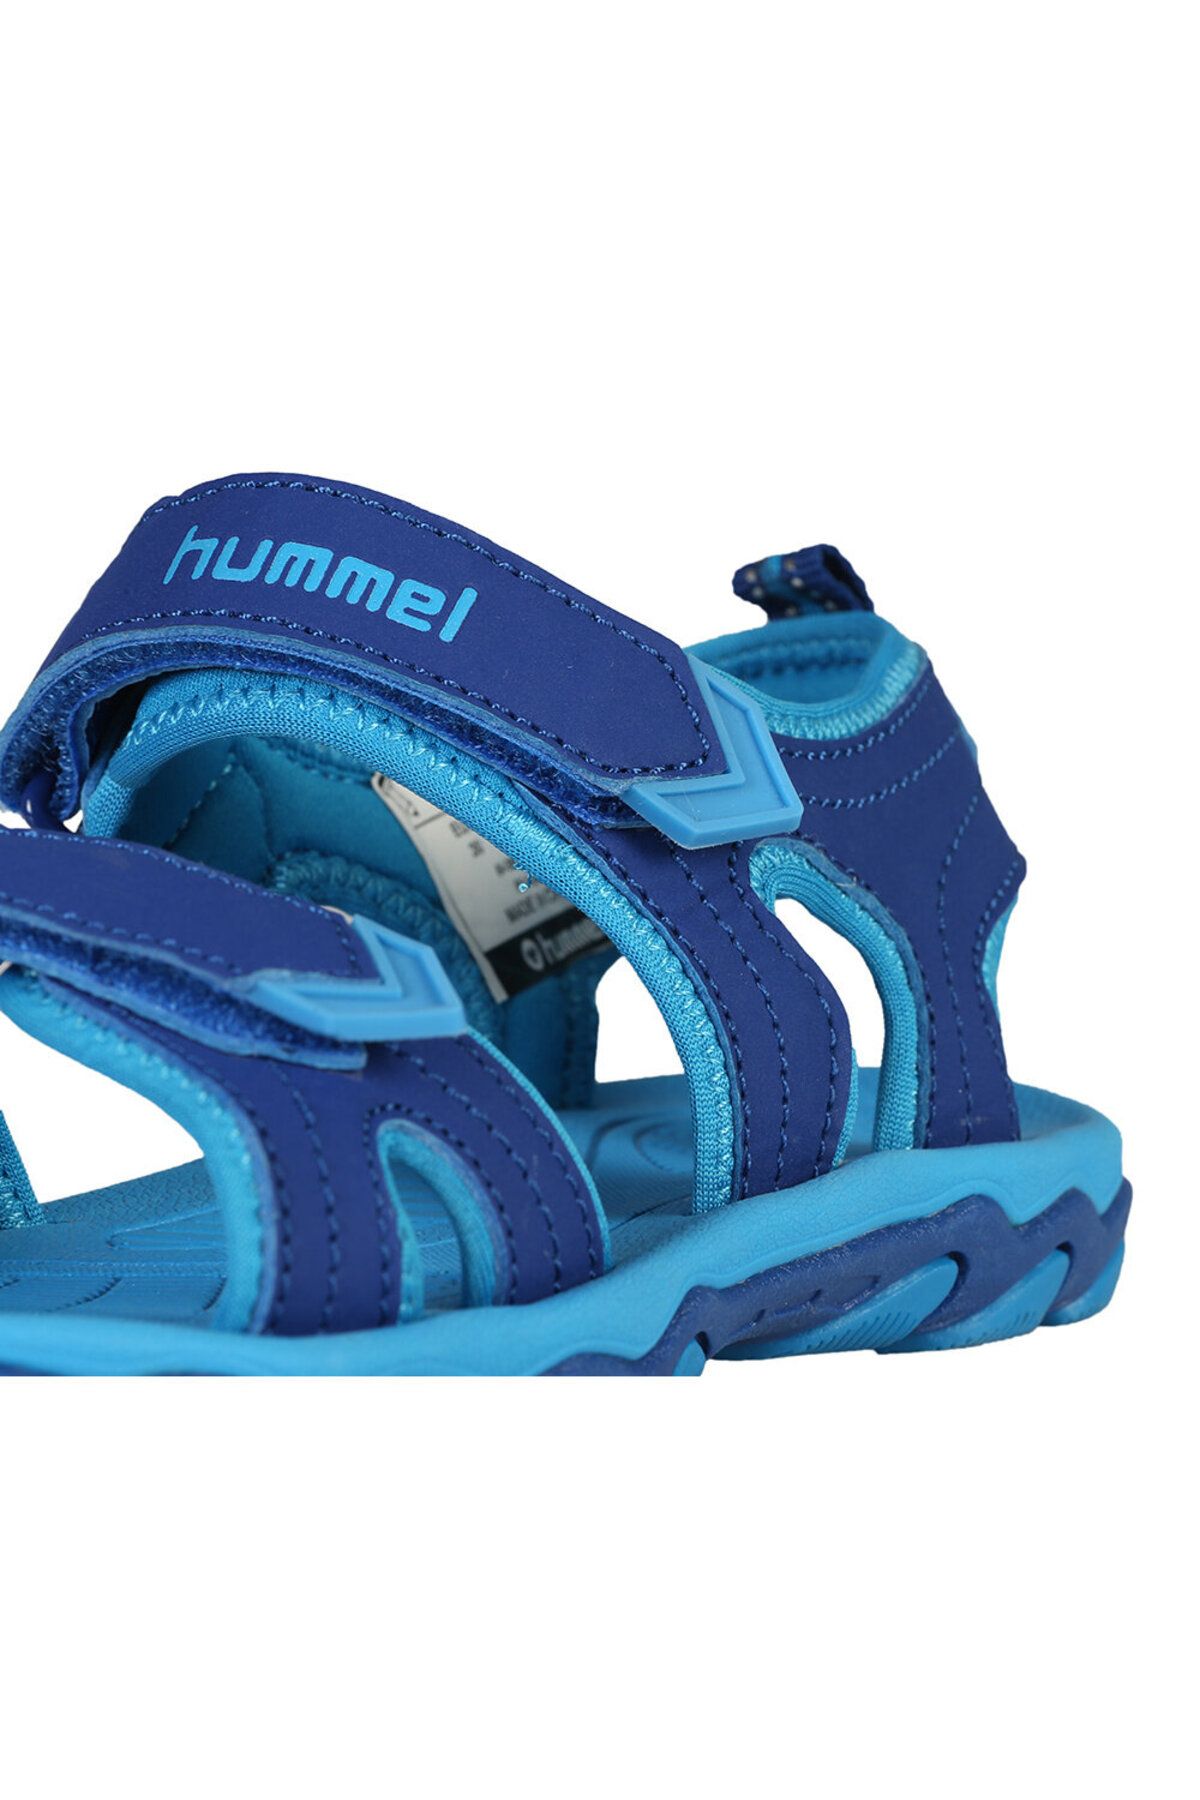 hummel Sandal Sport Ayakkabı